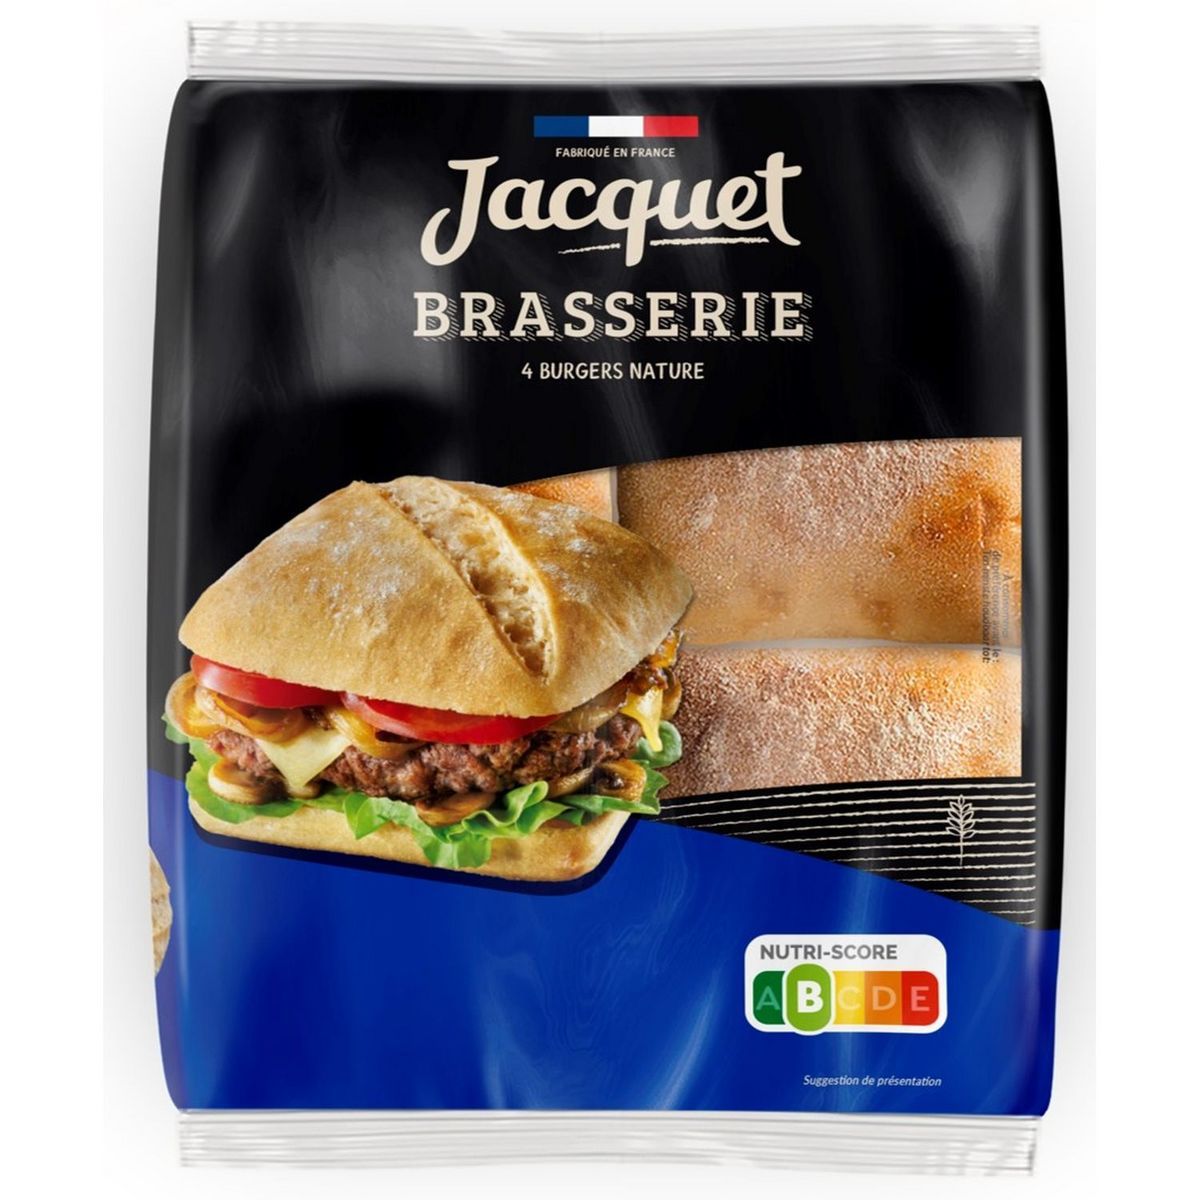 4 pains burgers nature brasserie Jacquet